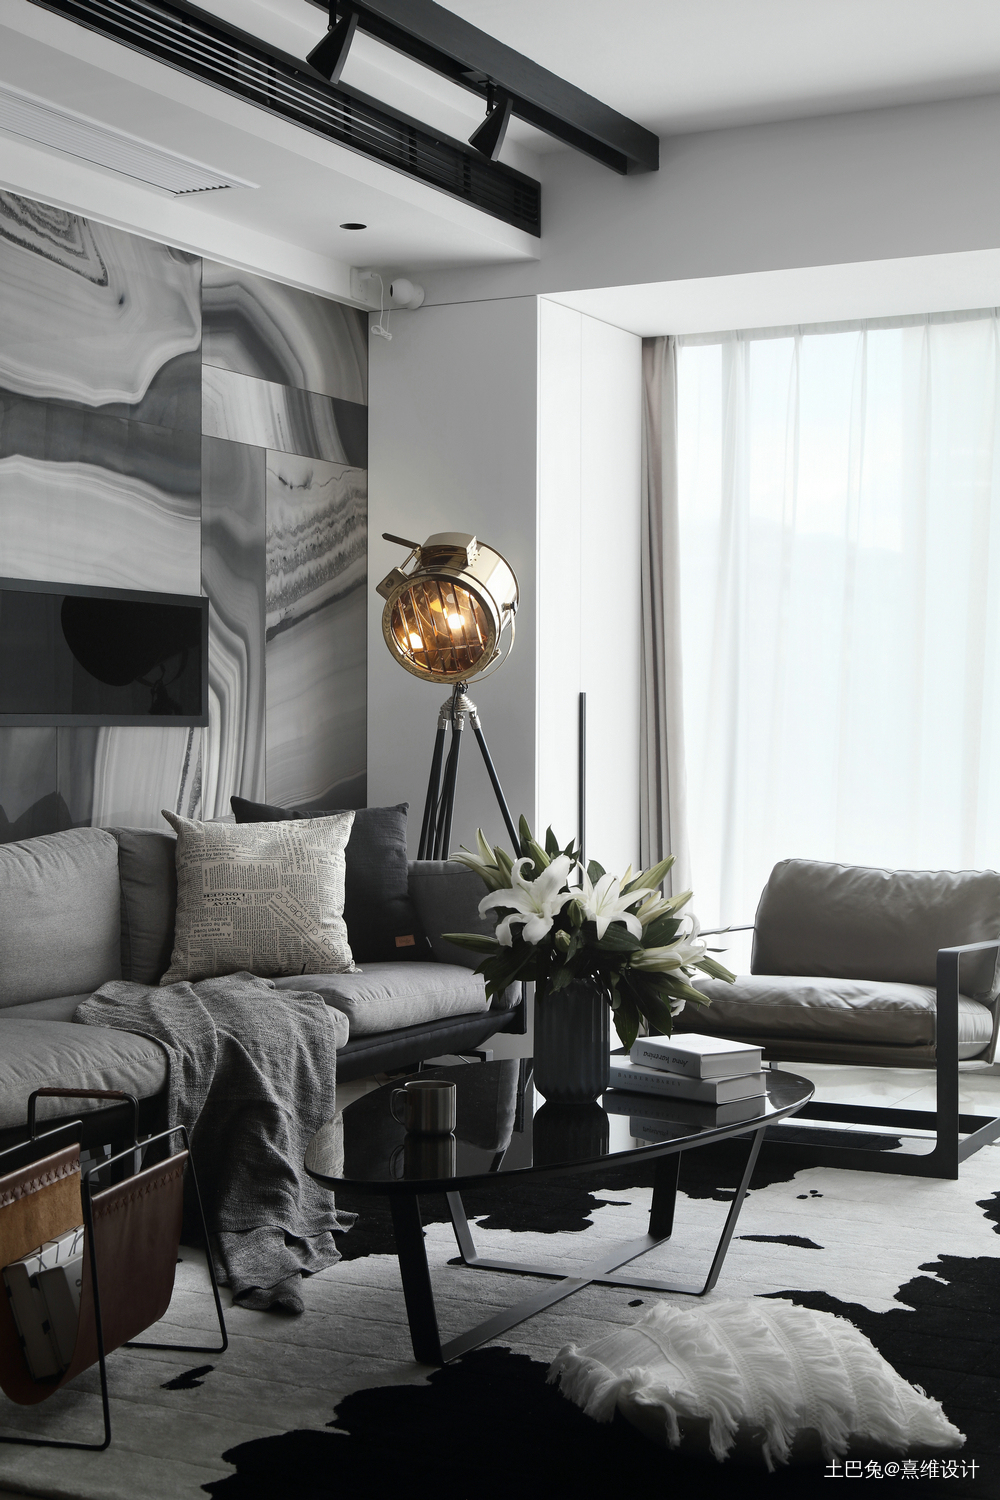 《流光亦彩》材质肌理下的时髦感空间现代简约客厅设计图片赏析